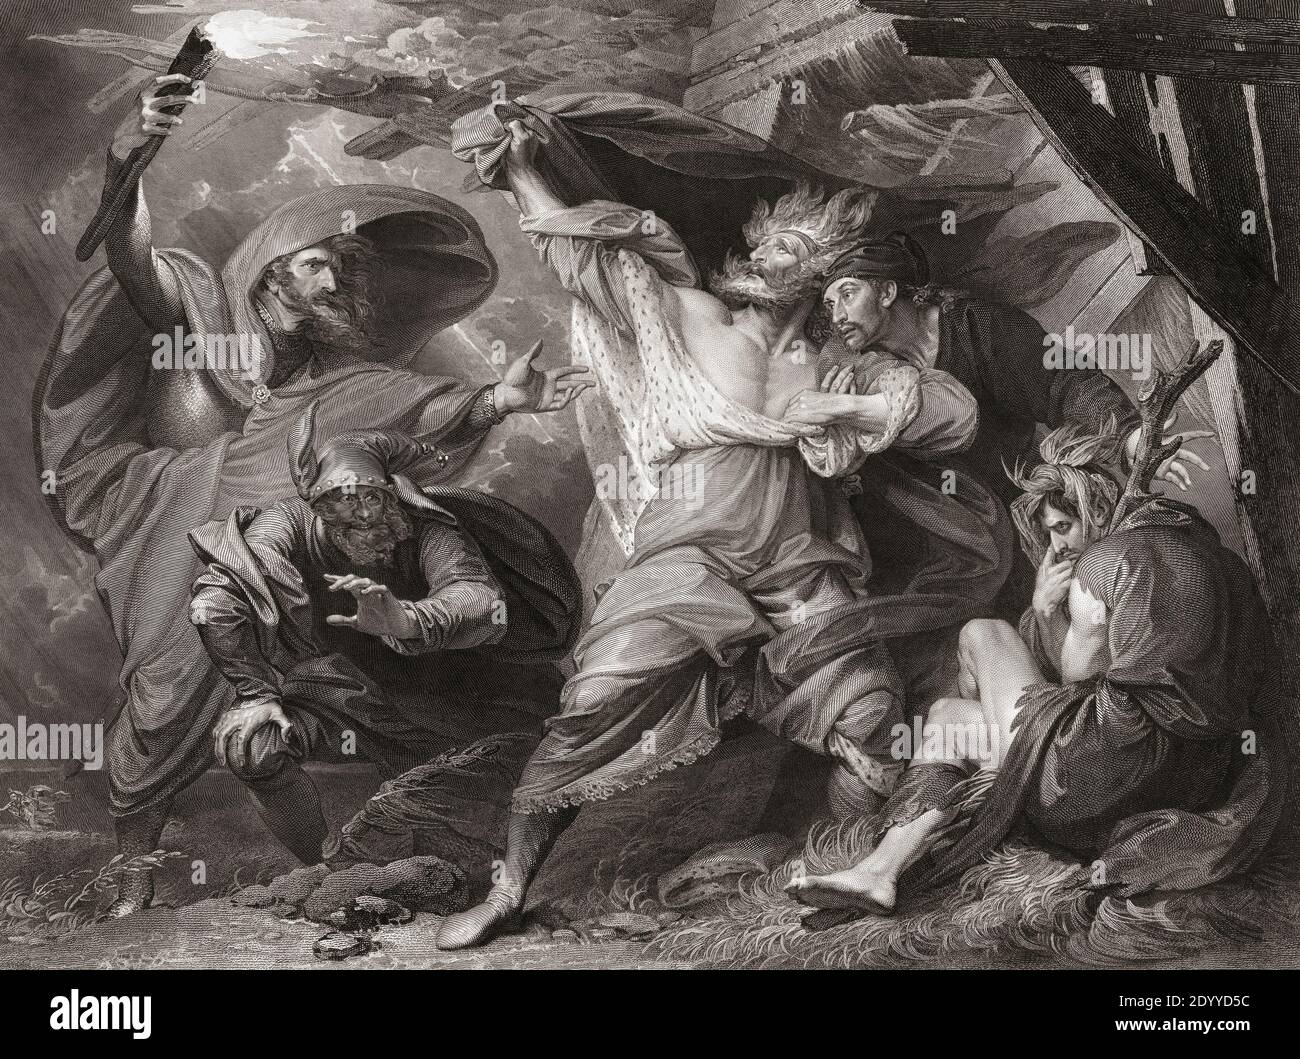 Illustration für William Shakespeares Theaterstück King Lear, III. Akt, Szene IV Aus einem Stich von William Sharp aus dem 18. Jahrhundert nach einem Werk von Benjamin West. Stockfoto